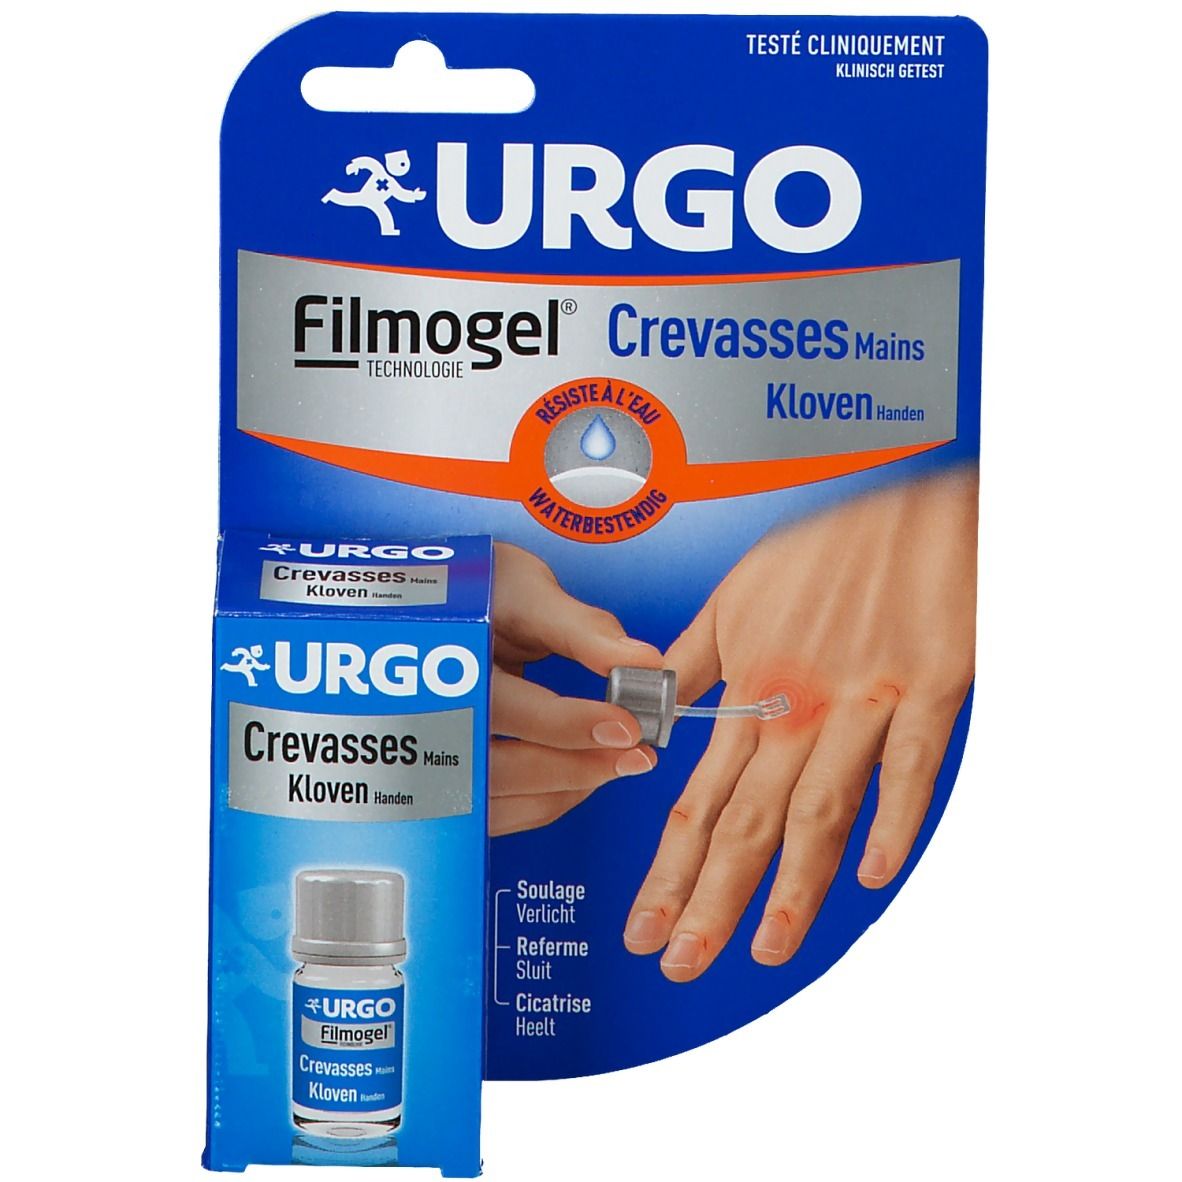 Urgo Filmogel® Crevasses Mains